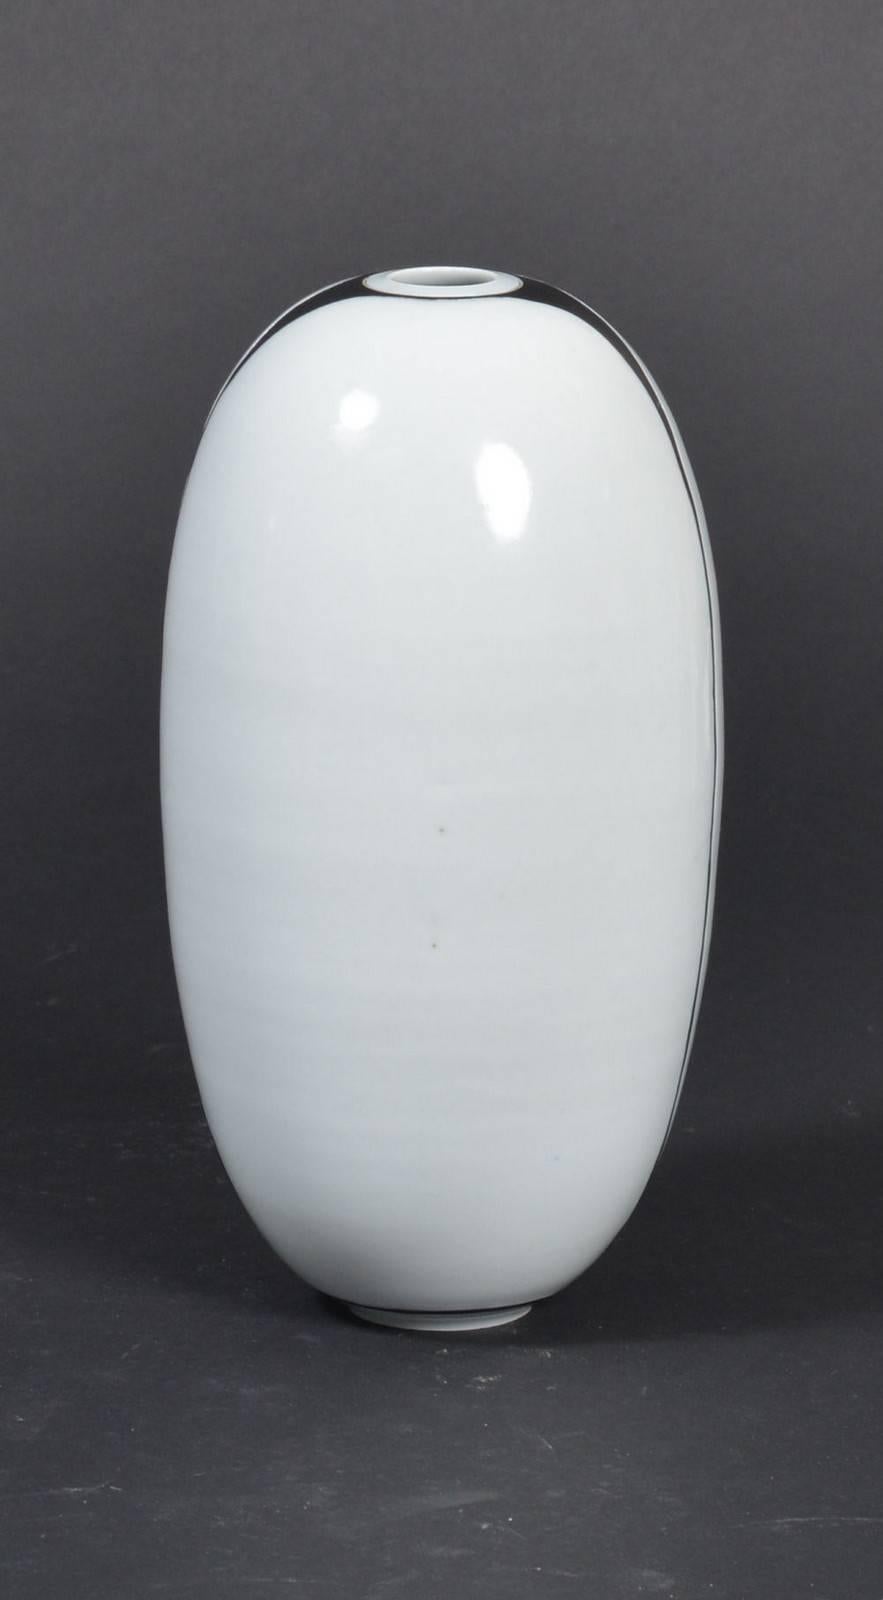 Grand vase, porcelaine, décor minimaliste, signé en bas. Fabriqué au Danemark dans les années 1970.